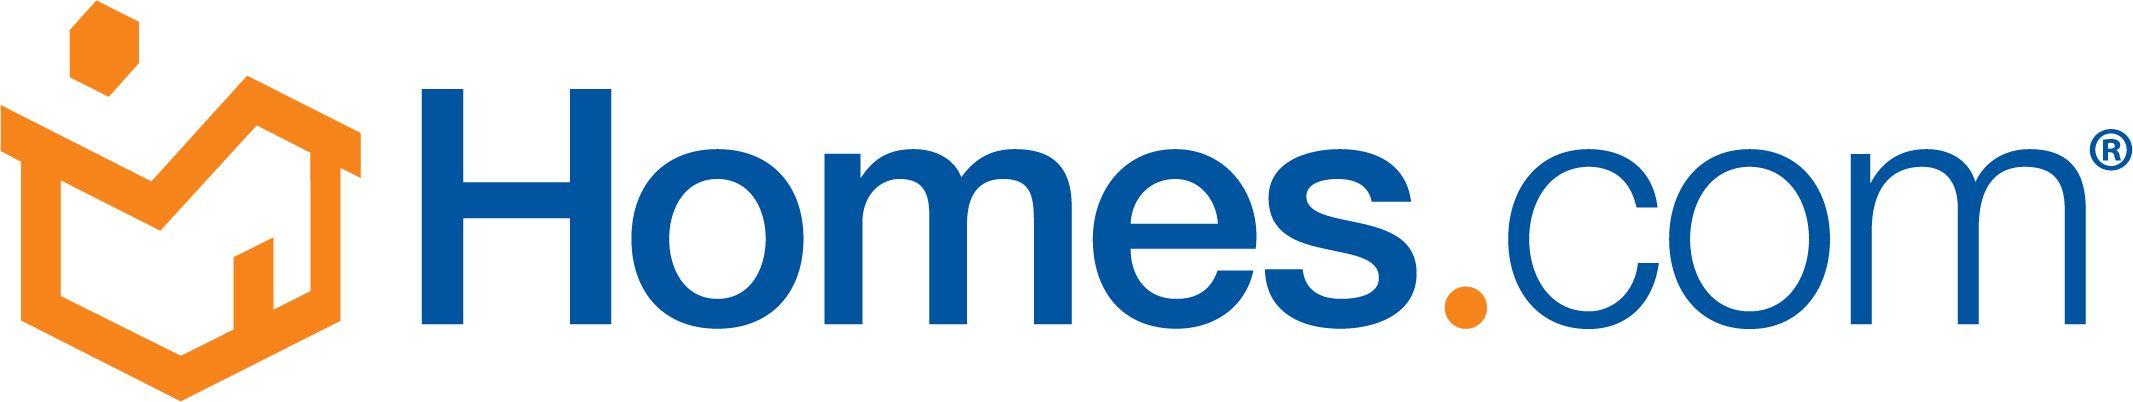 Homes.com Logo - 2019 Sponsors – MLSTechFair